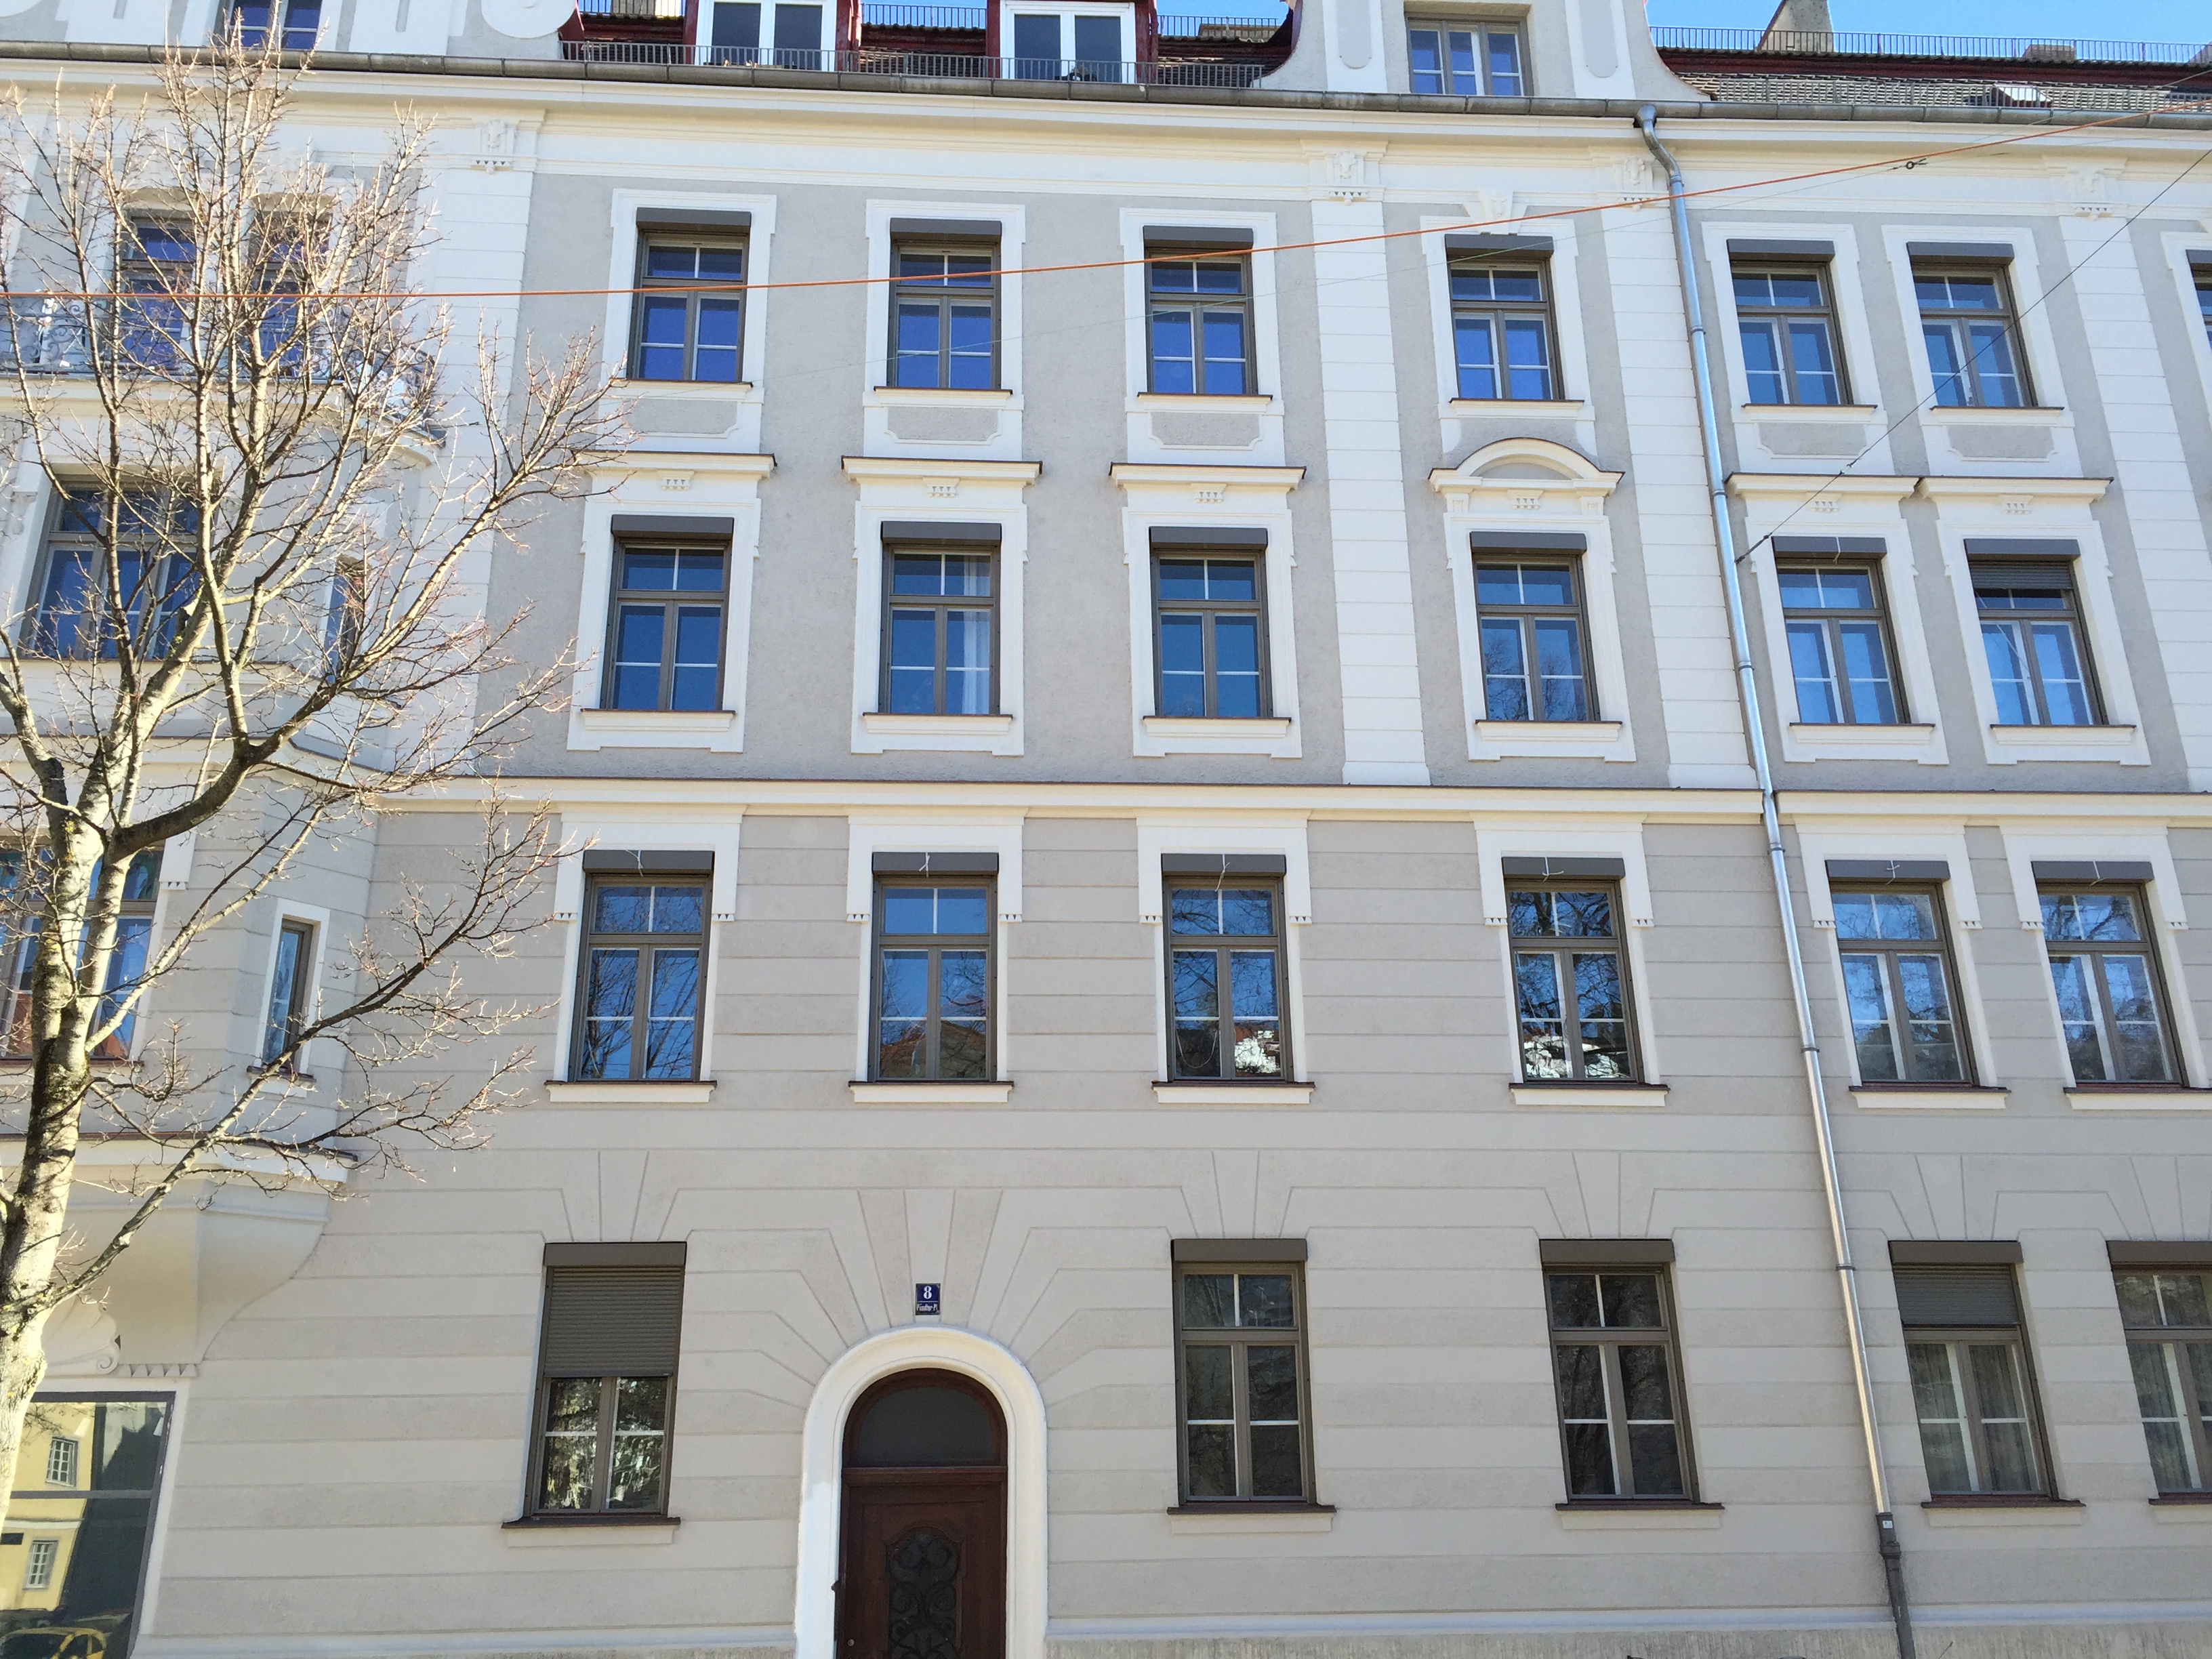 Fassadenrenovierung einer historischen Fassade in München Schwabing durch den Maler Meisterbetrieb Schume 2014